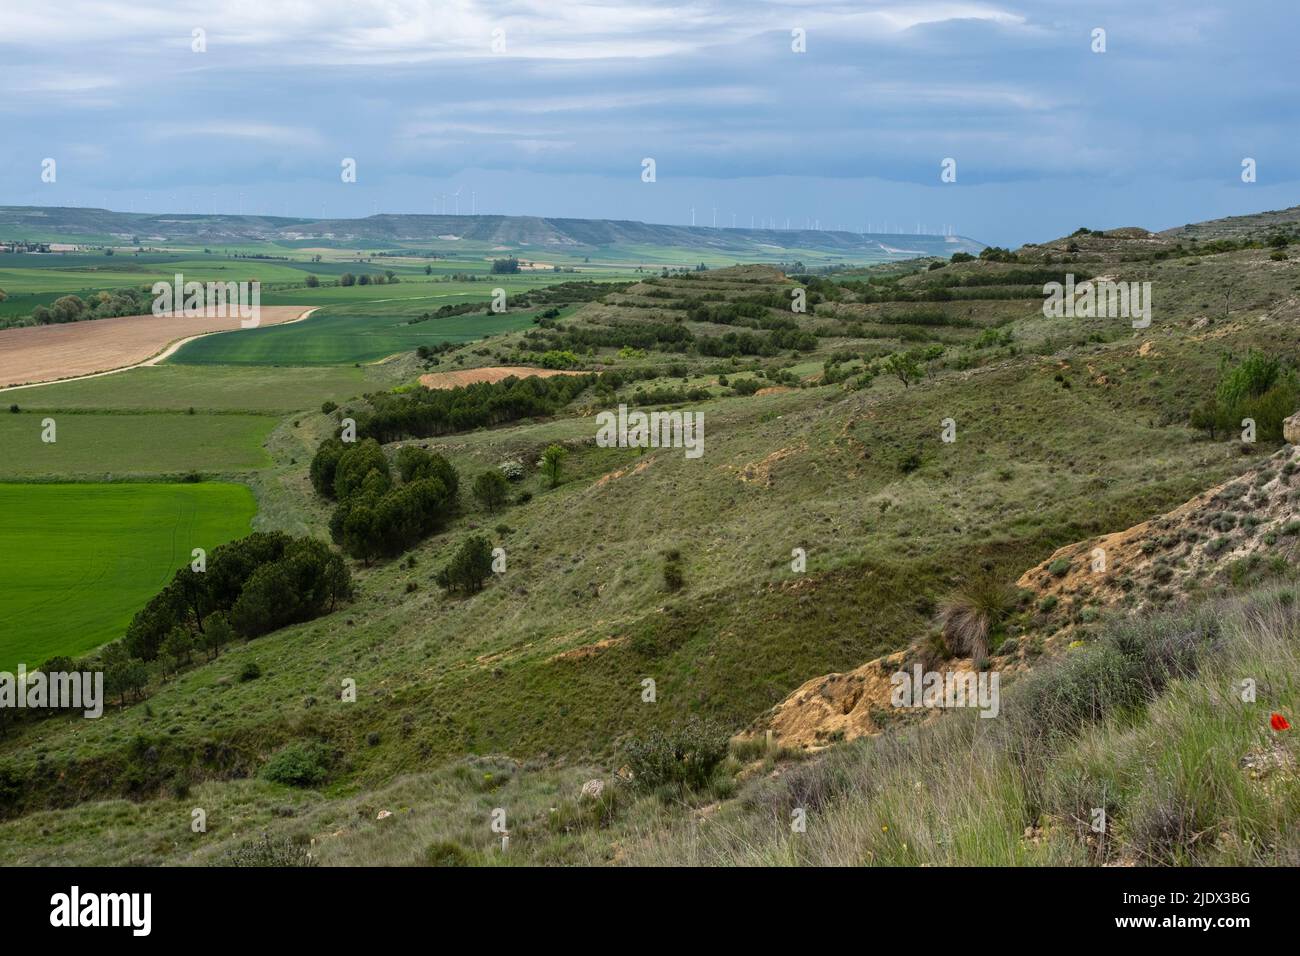 Espagne, Castilla y Leon. Vue sur le paysage tandis que le Camino de Santiago monte les collines près de Castrojeriz. Moulins à vent ligne la crête dans la distance. Banque D'Images